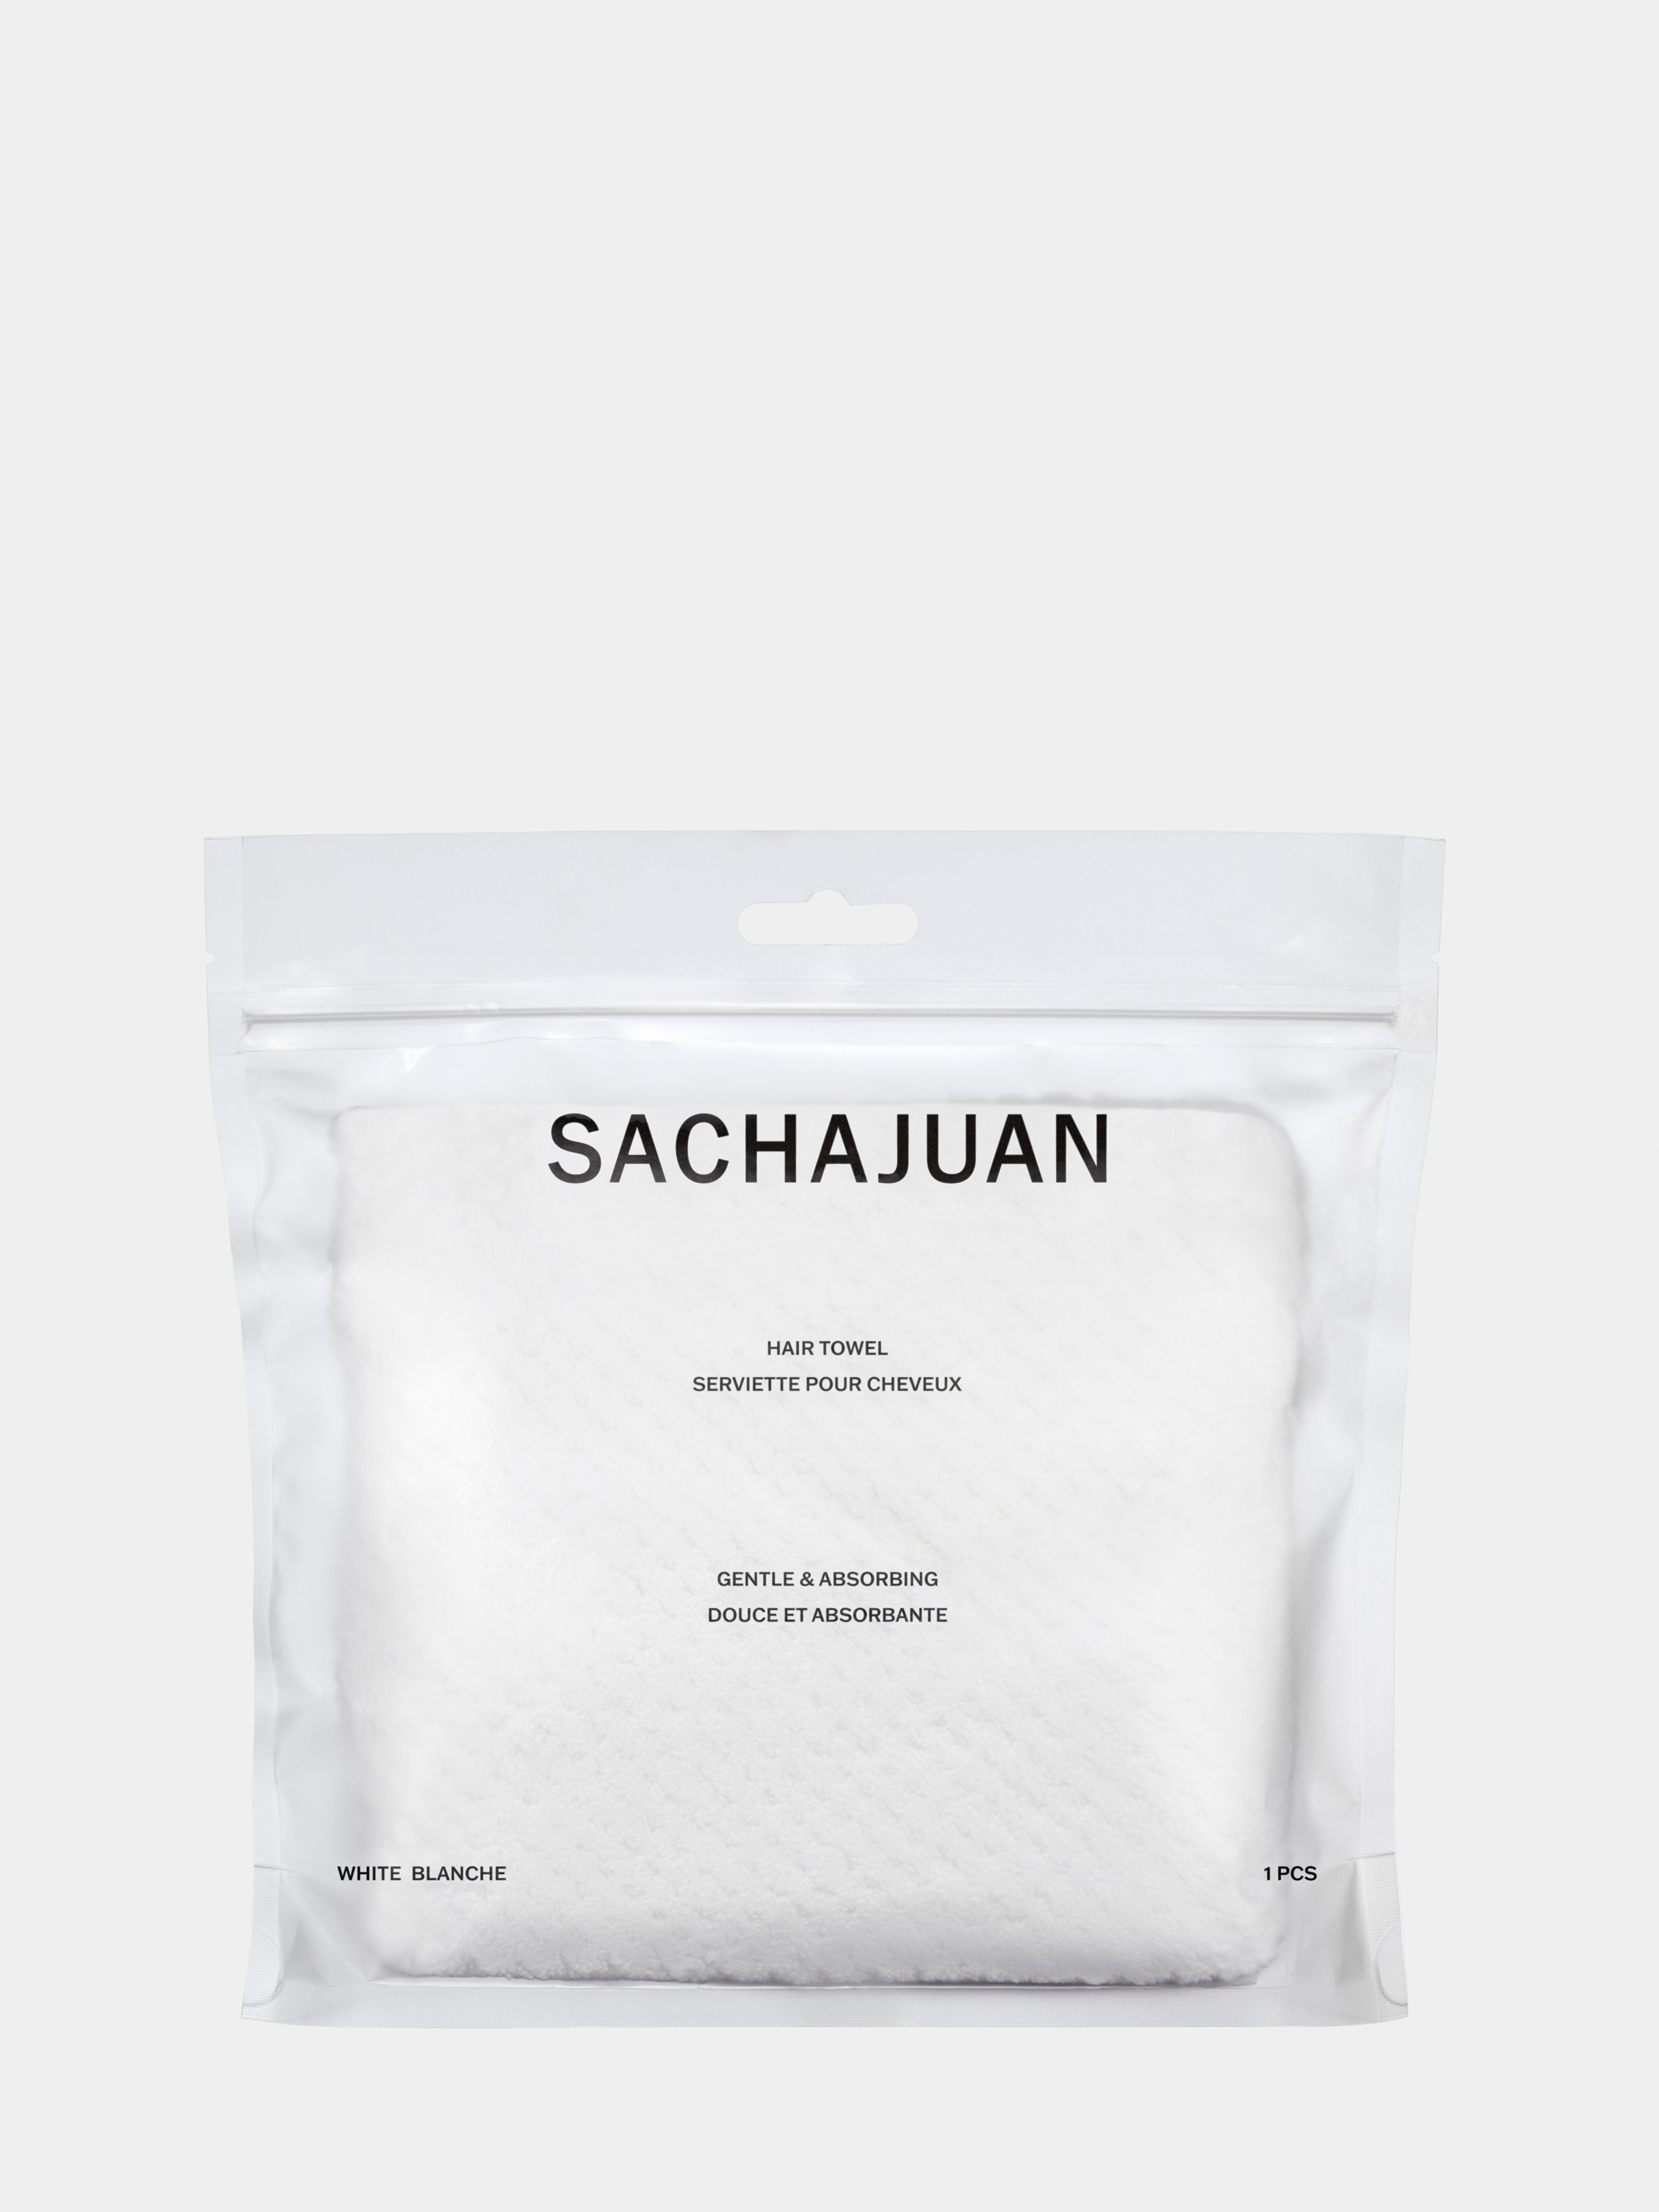 Sachajuan Hair Towel in Bag